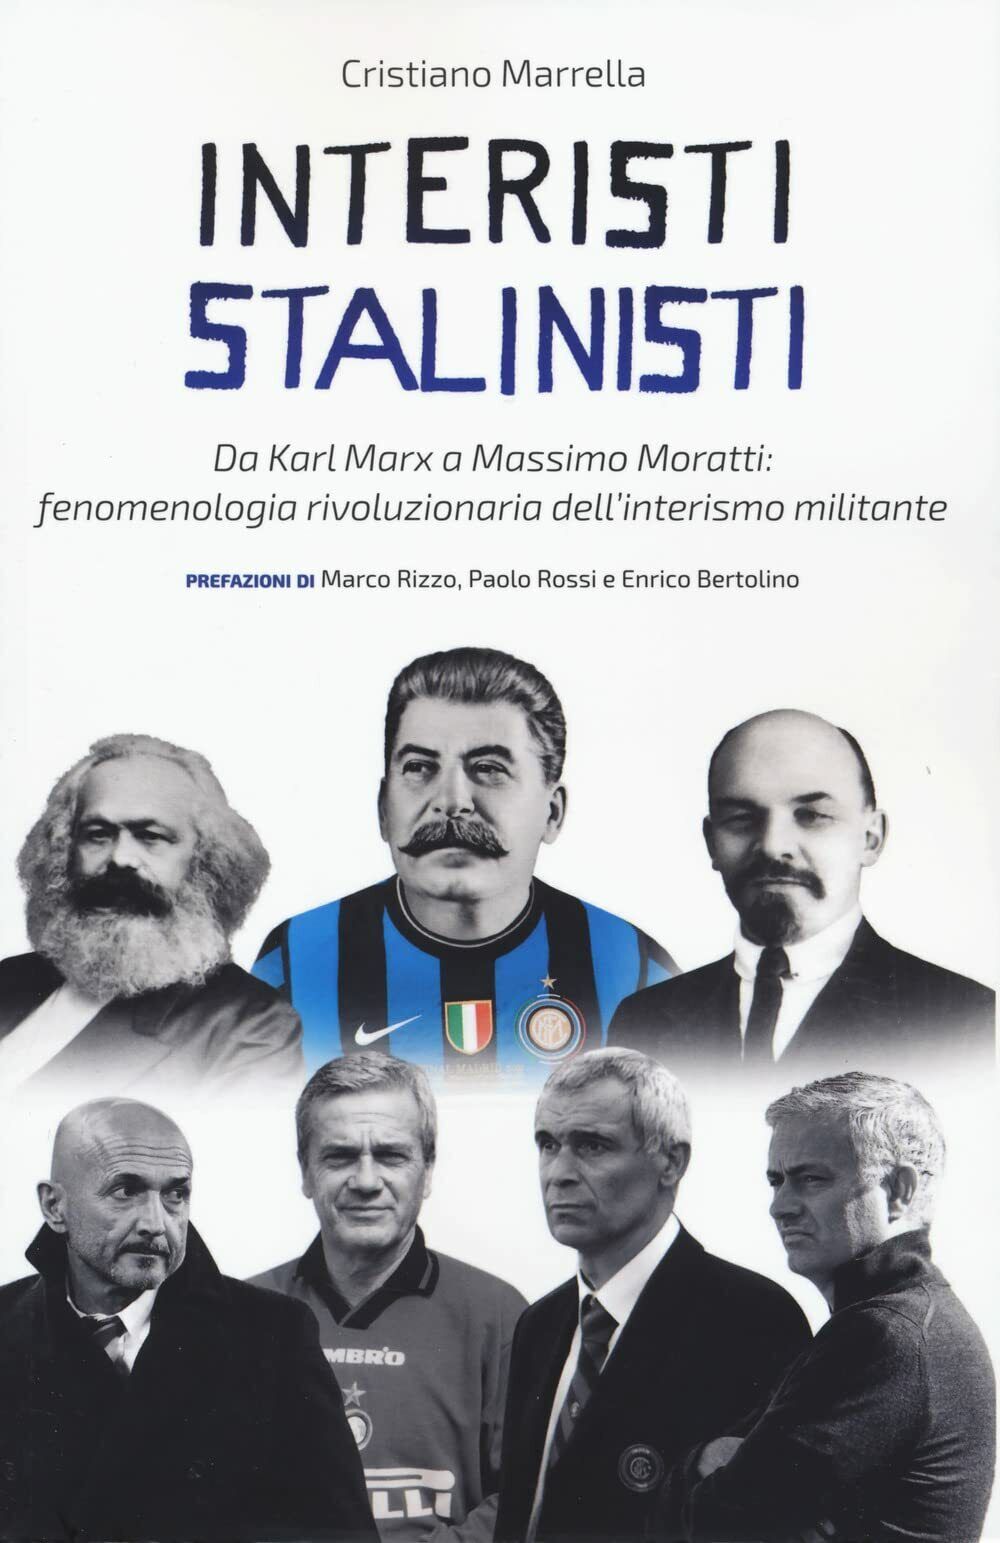 Interisti stalinisti - Cristiano Marrella - Red Star Press, 2022